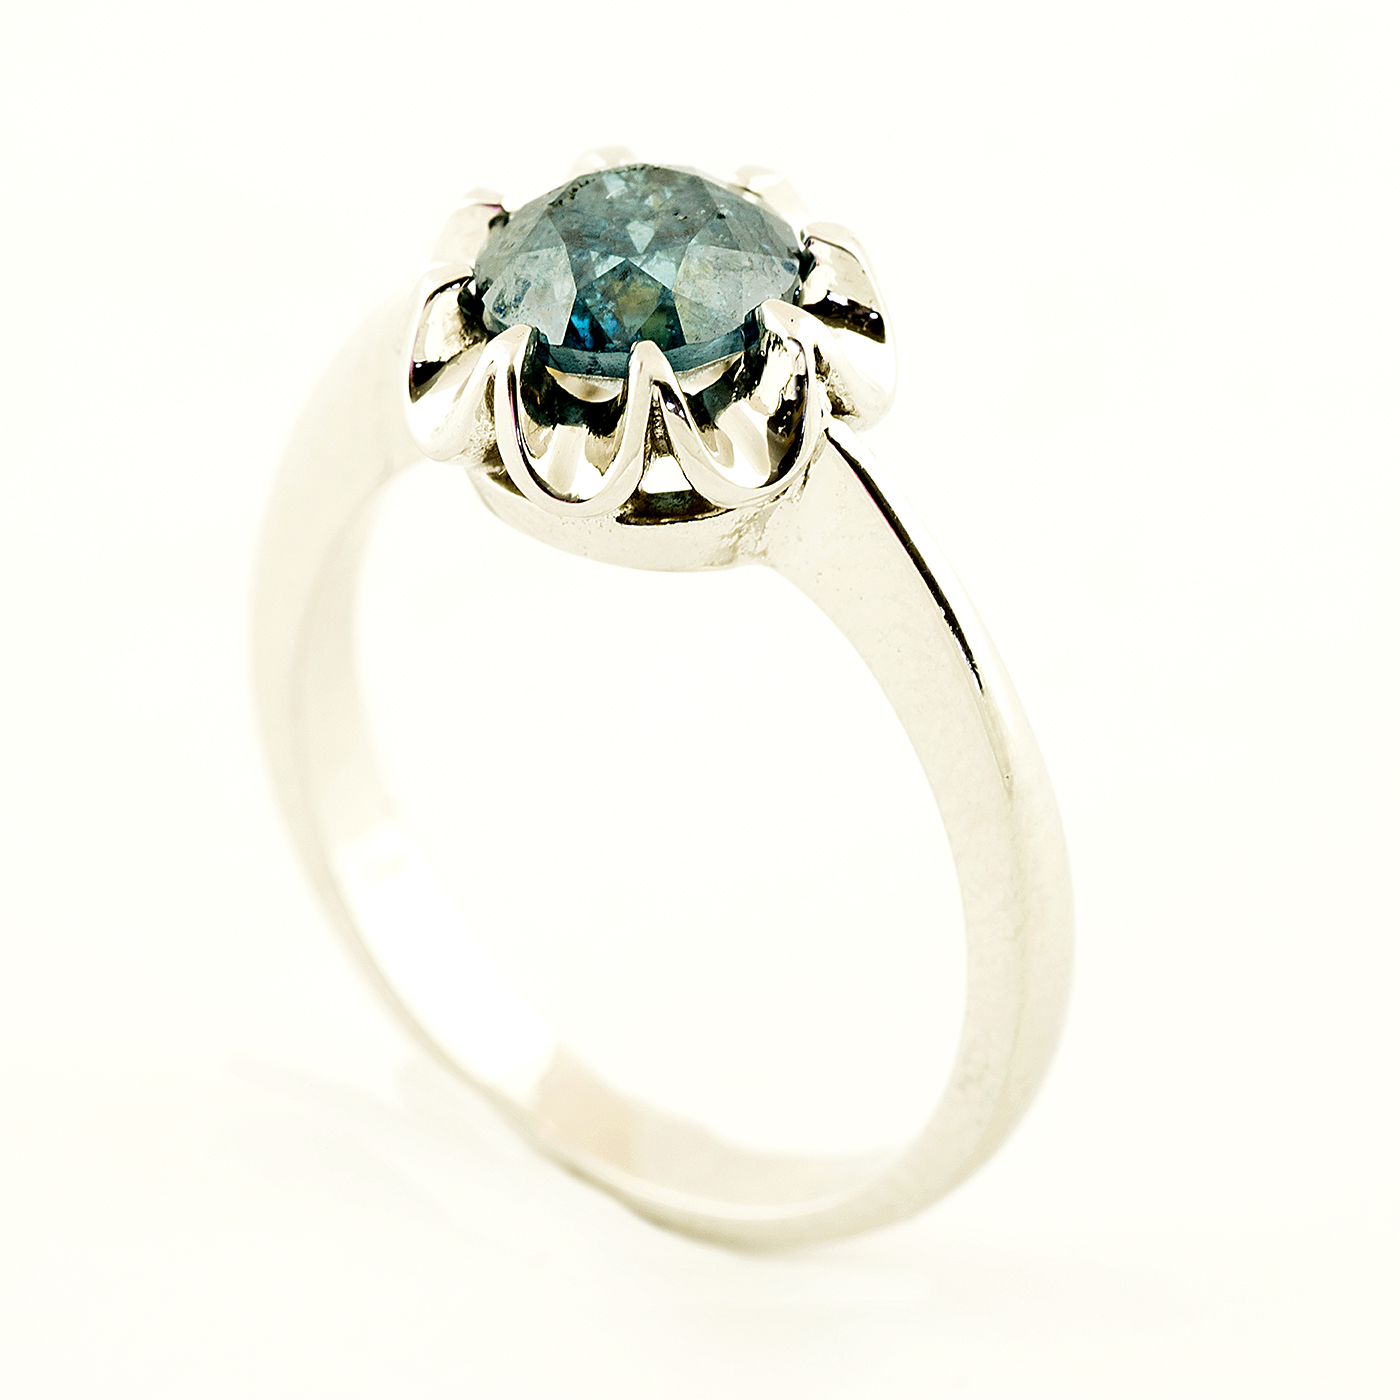 Solitario en Oro Blanco con Diamante Natural talla Brillante, de 1,26 ct. Color Fancy deep Green Blue, Claridad SI2. 4.68 gr.